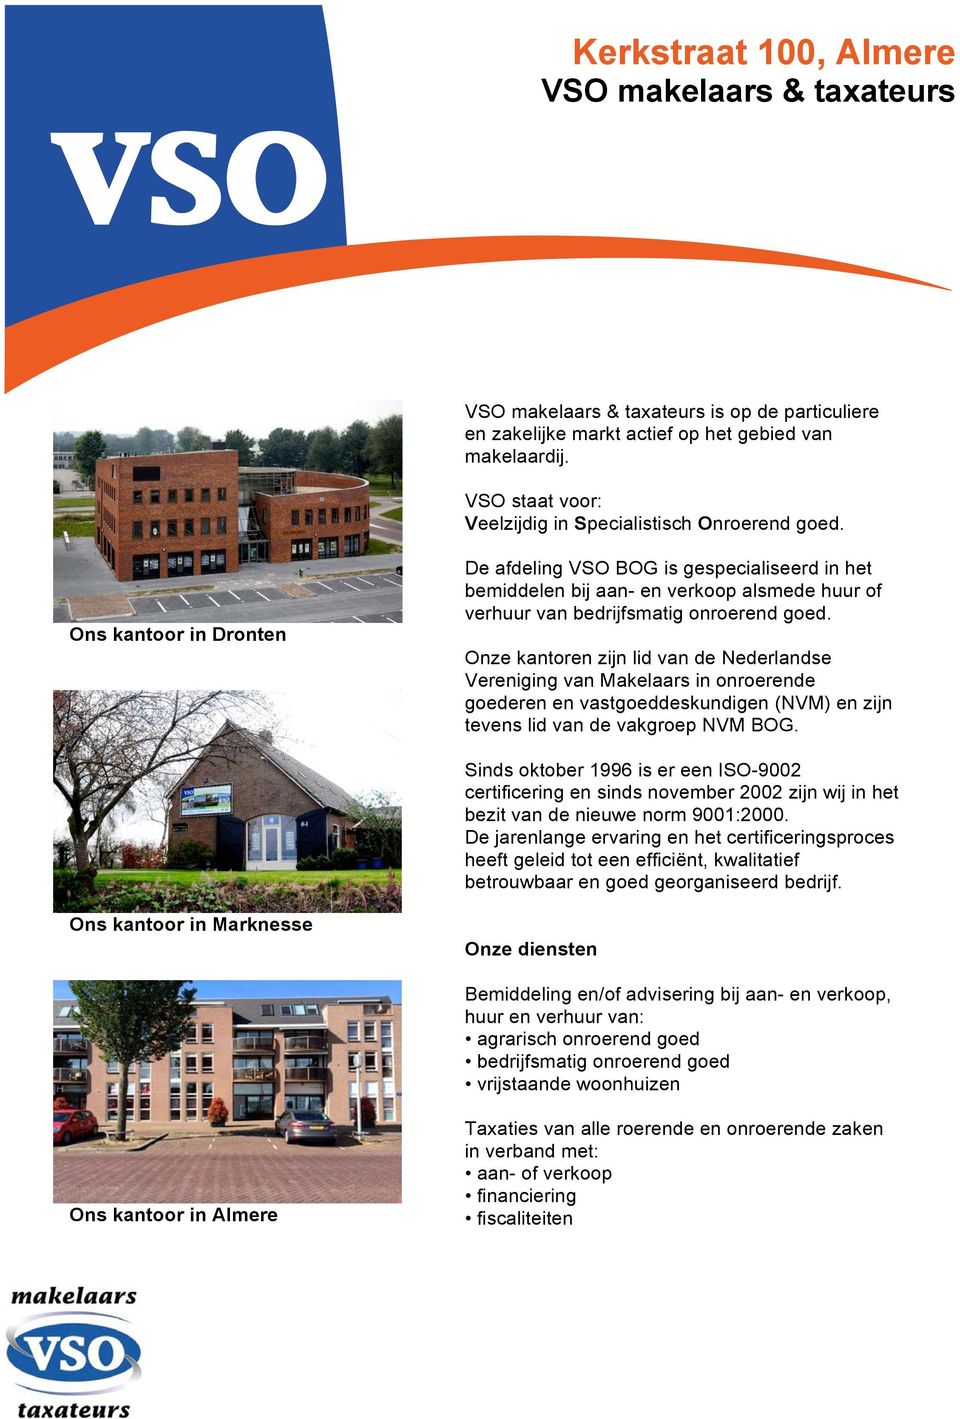 Onze kantoren zijn lid van de Nederlandse Vereniging van Makelaars in onroerende goederen en vastgoeddeskundigen (NVM) en zijn tevens lid van de vakgroep NVM BOG.